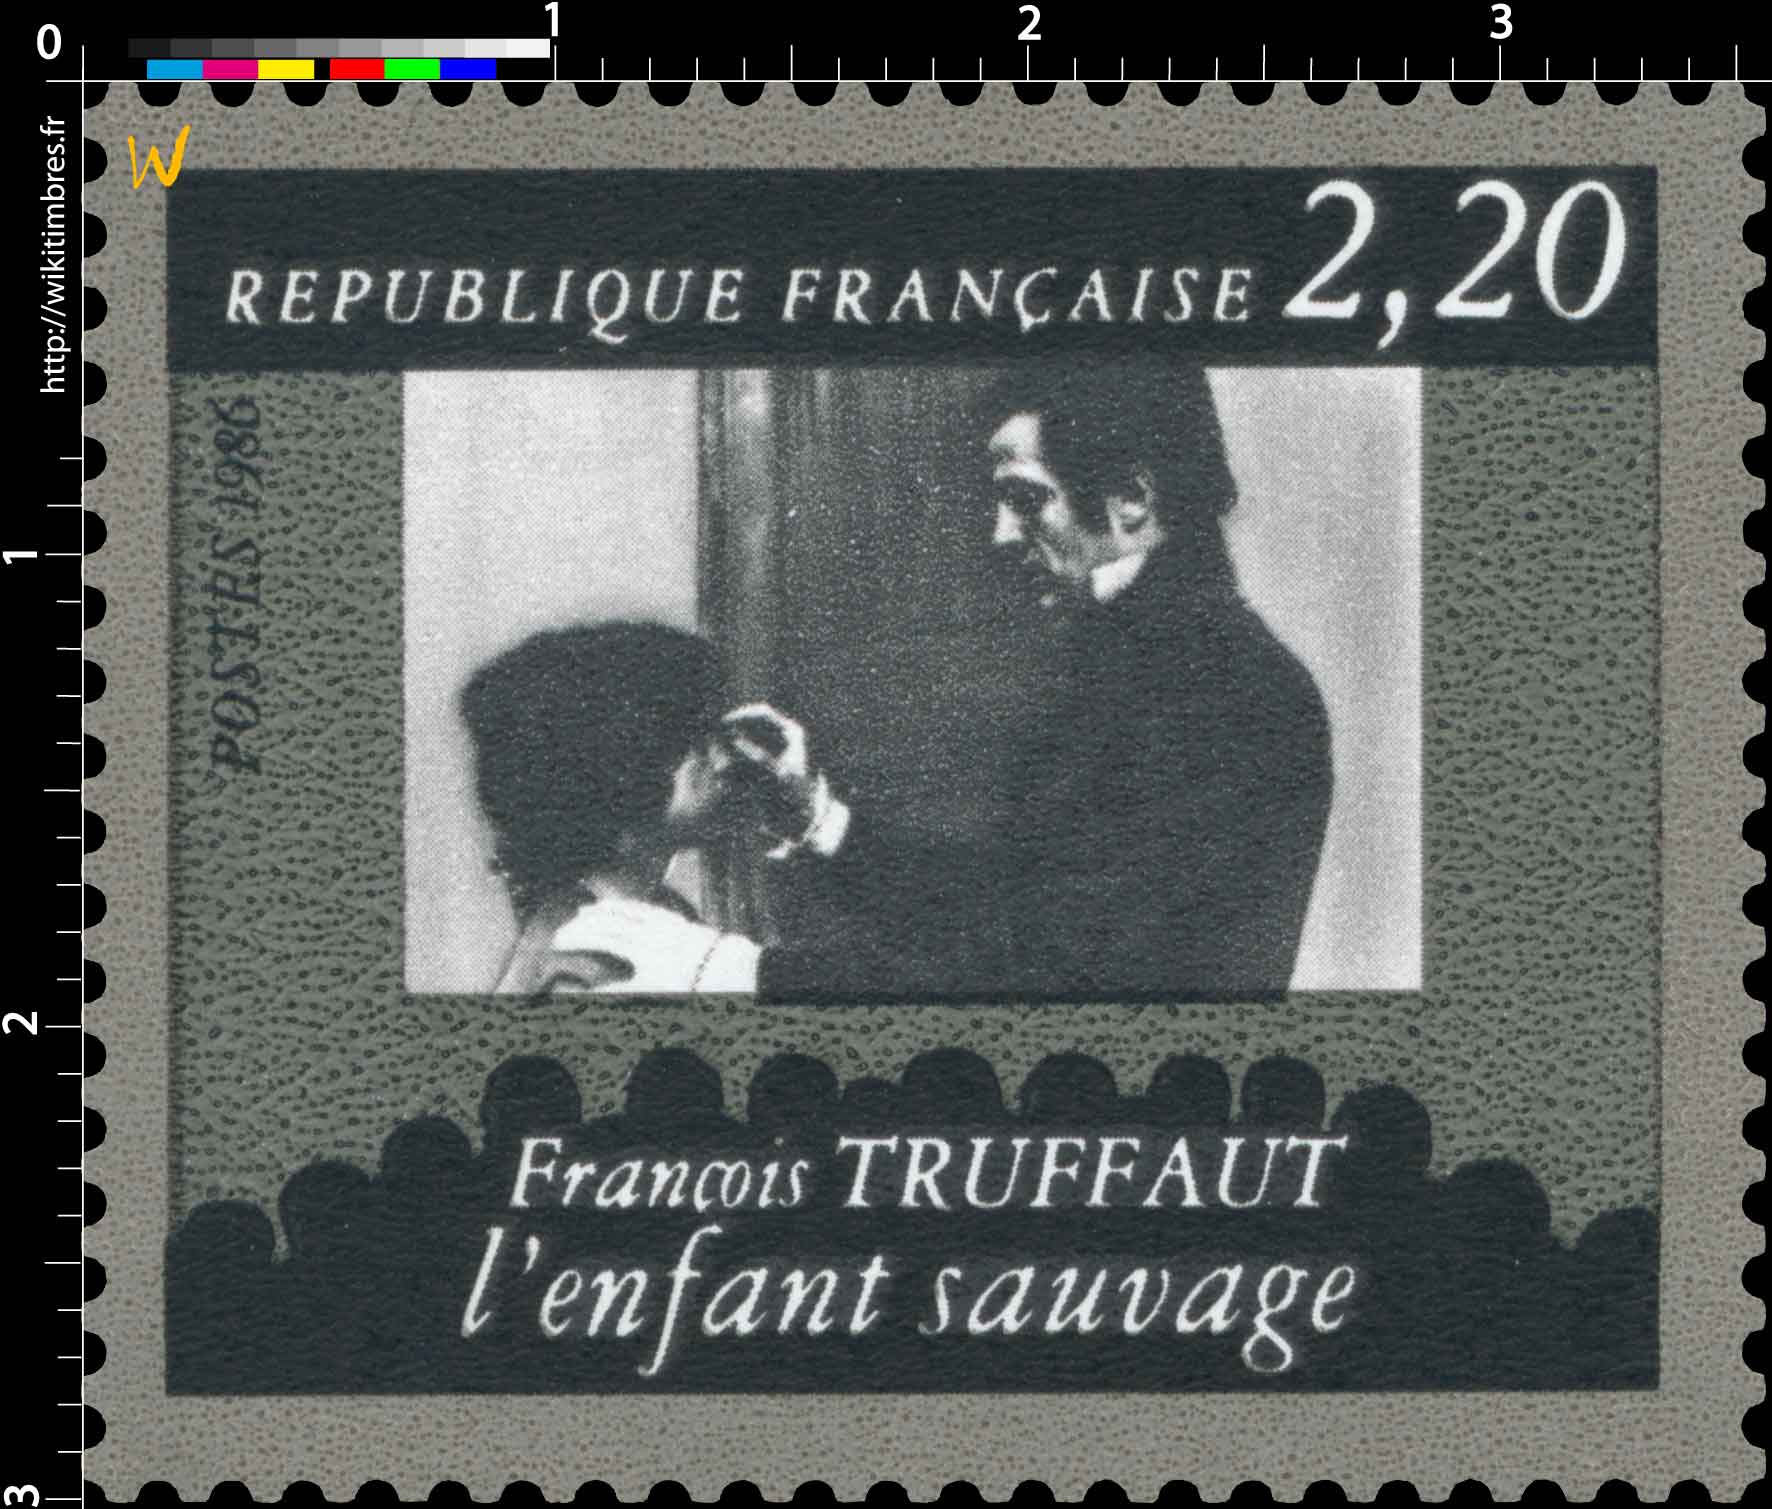 1986 François TRUFFAUT l'enfant sauvage